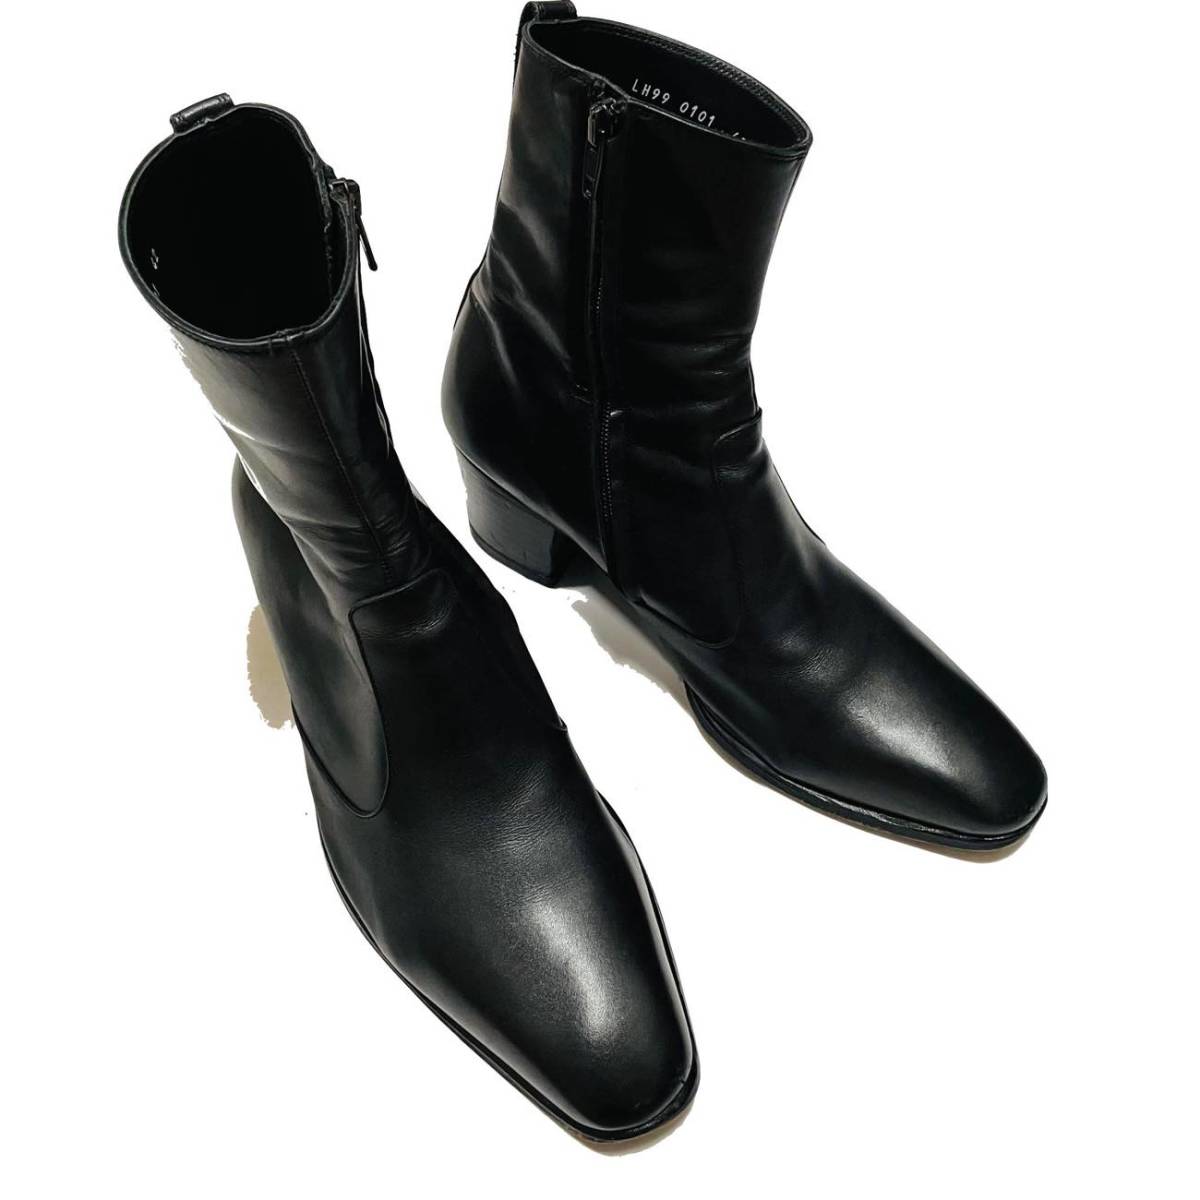 LITHIUM HOMME サイドジップブーツ 定価115,500円 42(26.5cm) リチウムオム 近年モデル レザーシューズ 靴 LH99-0101 牛革 ブラック 黒_画像7